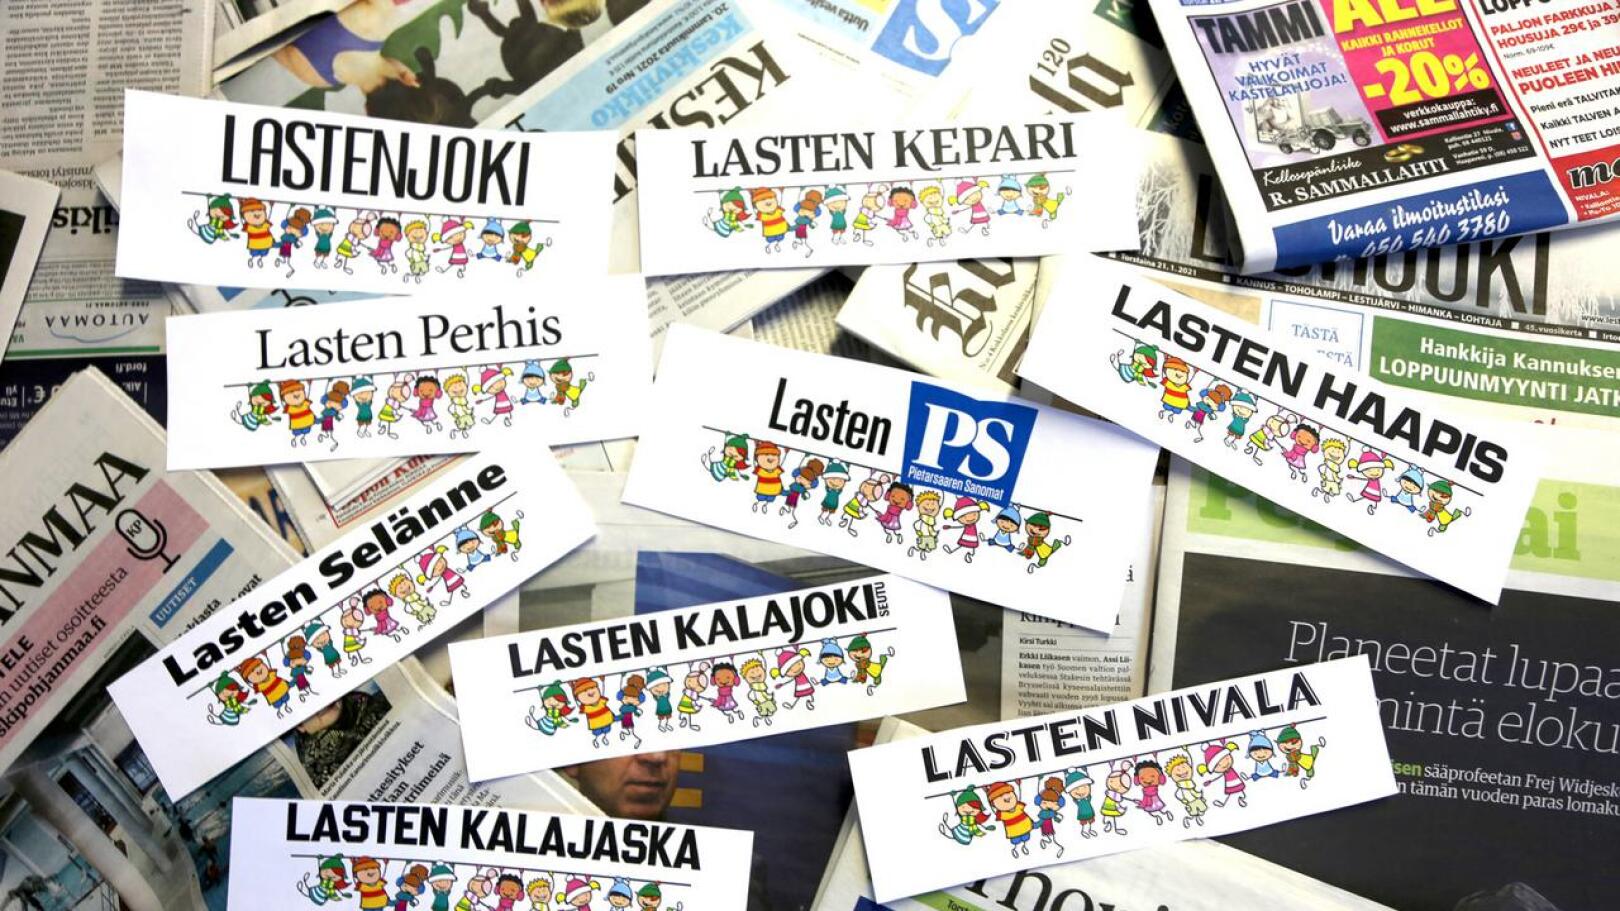 Lasten lehti ilmestyy tänä vuonna Keskipohjanmaan, Haapavesi-lehden, Lestijoki-lehden, Kalajokiseudun, Kalajokilaakson, Nivala-lehden sekä Perhonjokilaakson välissä. 